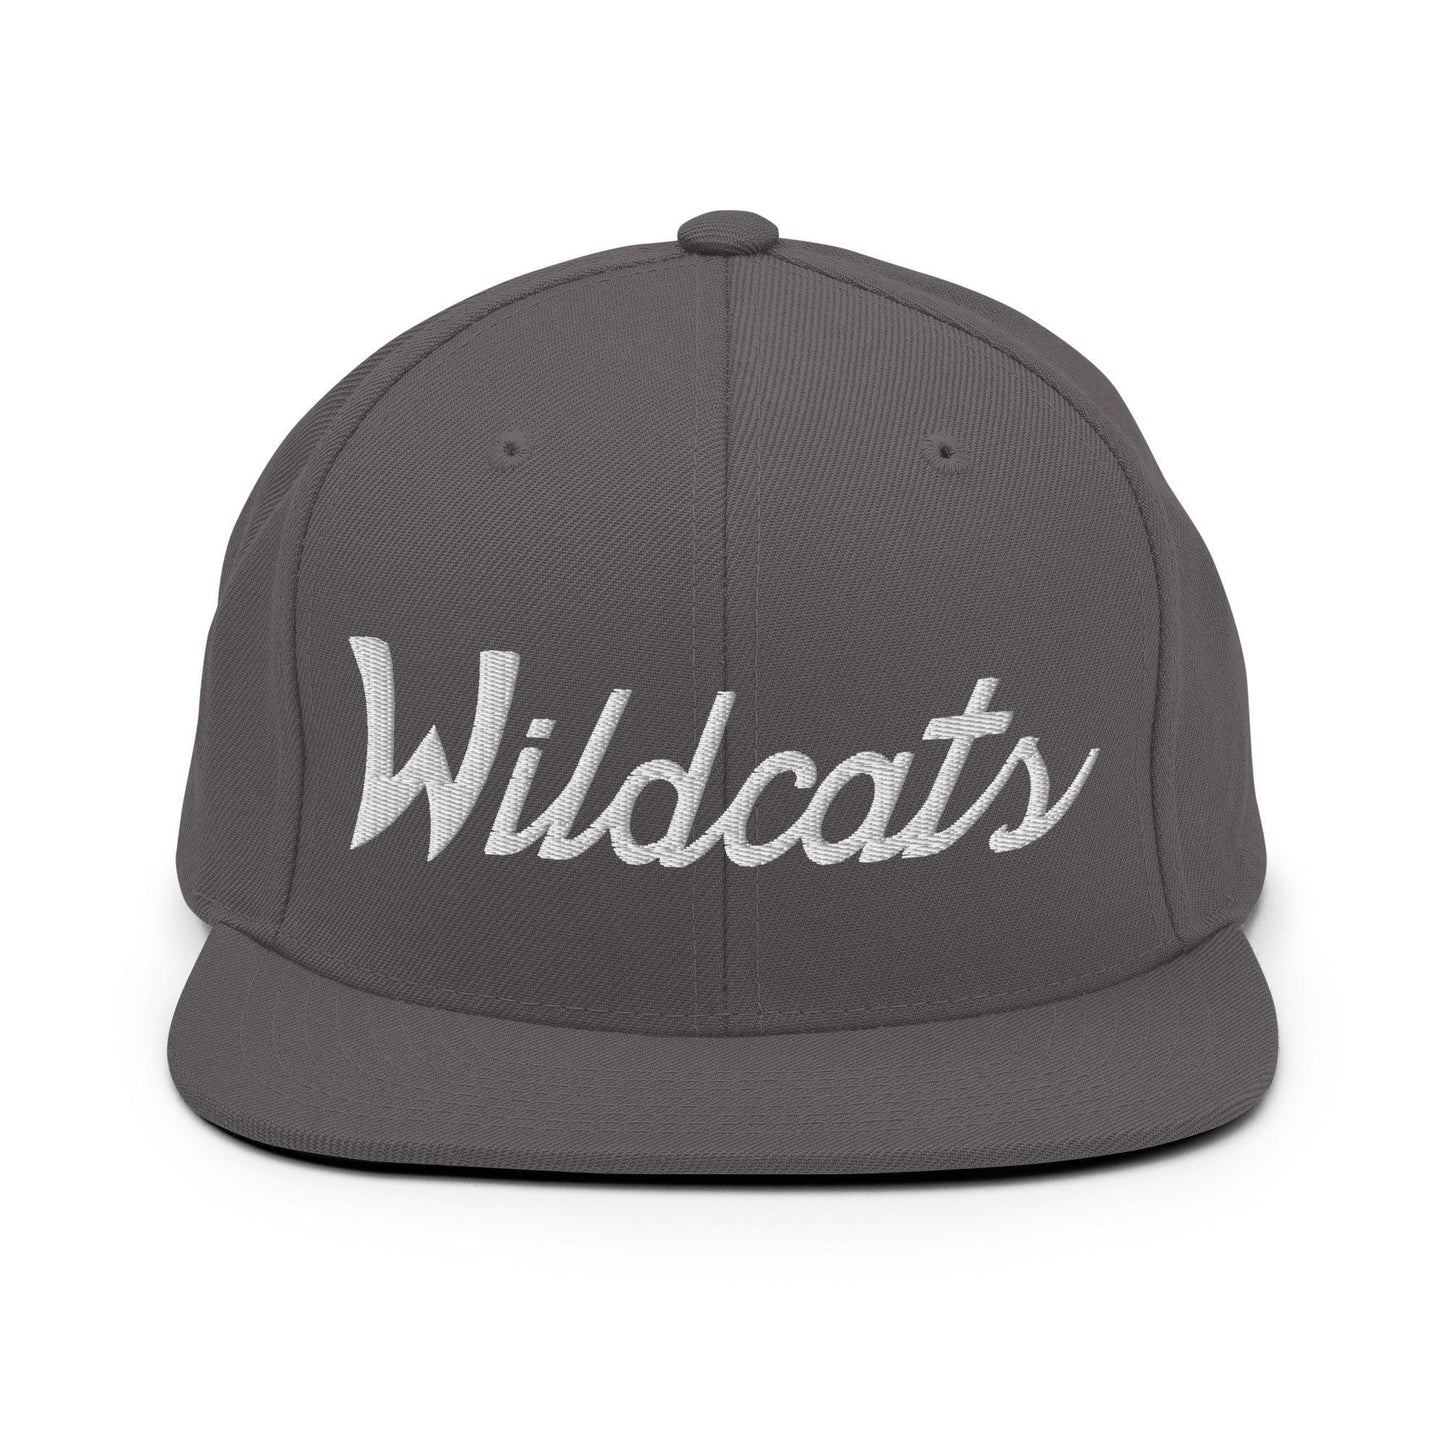 Wildcats School Mascot Script Snapback Hat Dark Grey